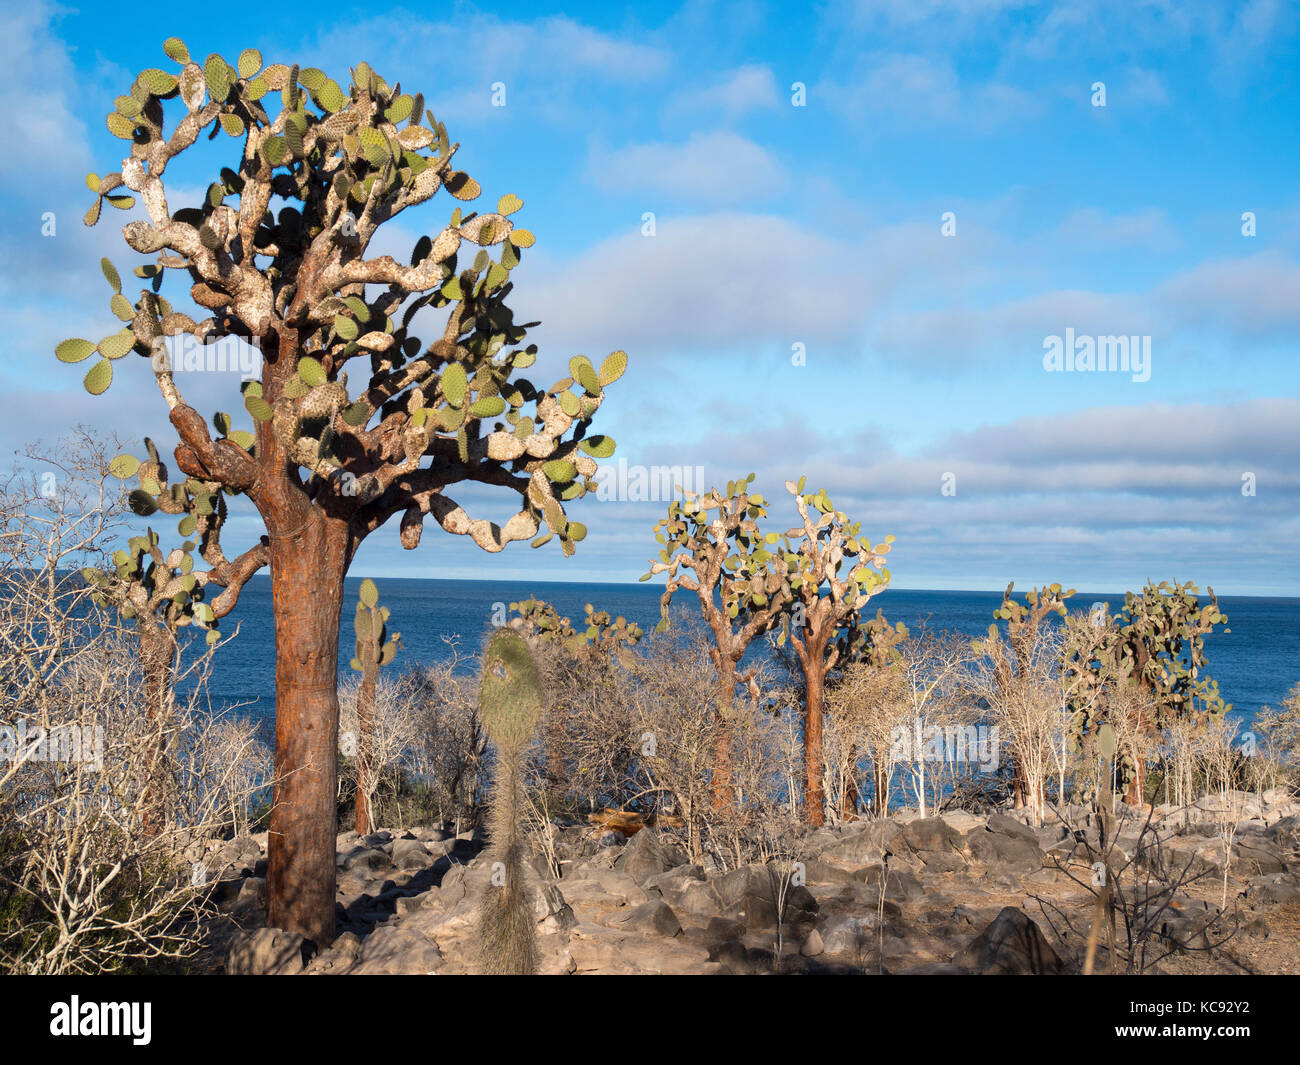 Arbres cactus sur l'île de Santa Fe - Galapagos, Equateur Banque D'Images